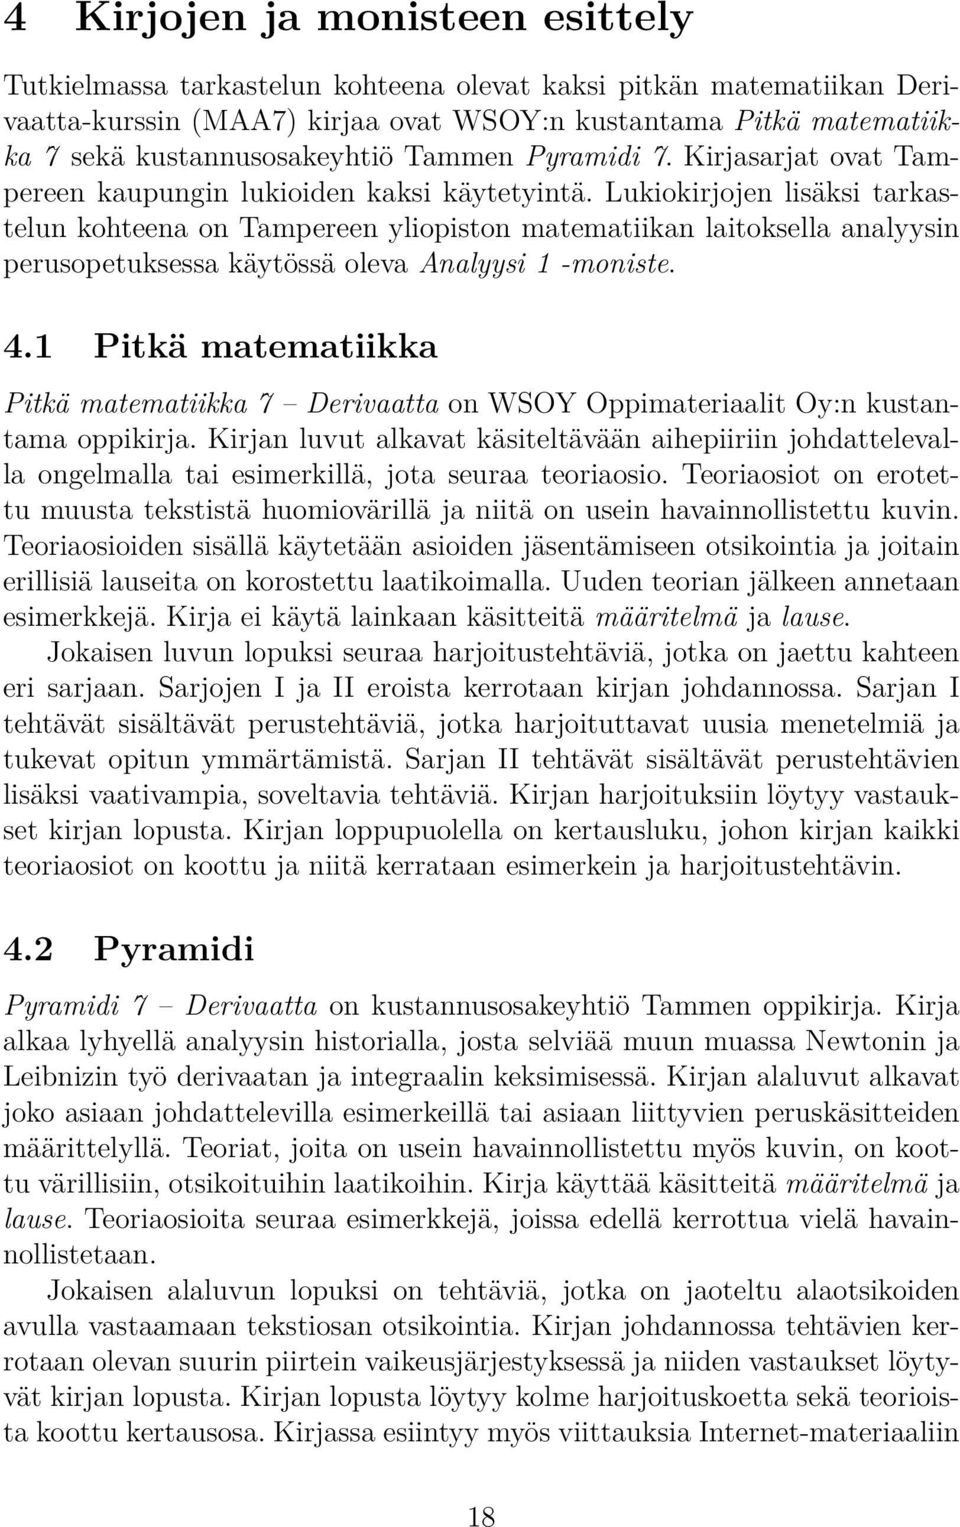 Lukiokirjojen lisäksi tarkastelun kohteena on Tampereen yliopiston matematiikan laitoksella analyysin perusopetuksessa käytössä oleva Analyysi 1 -moniste. 4.